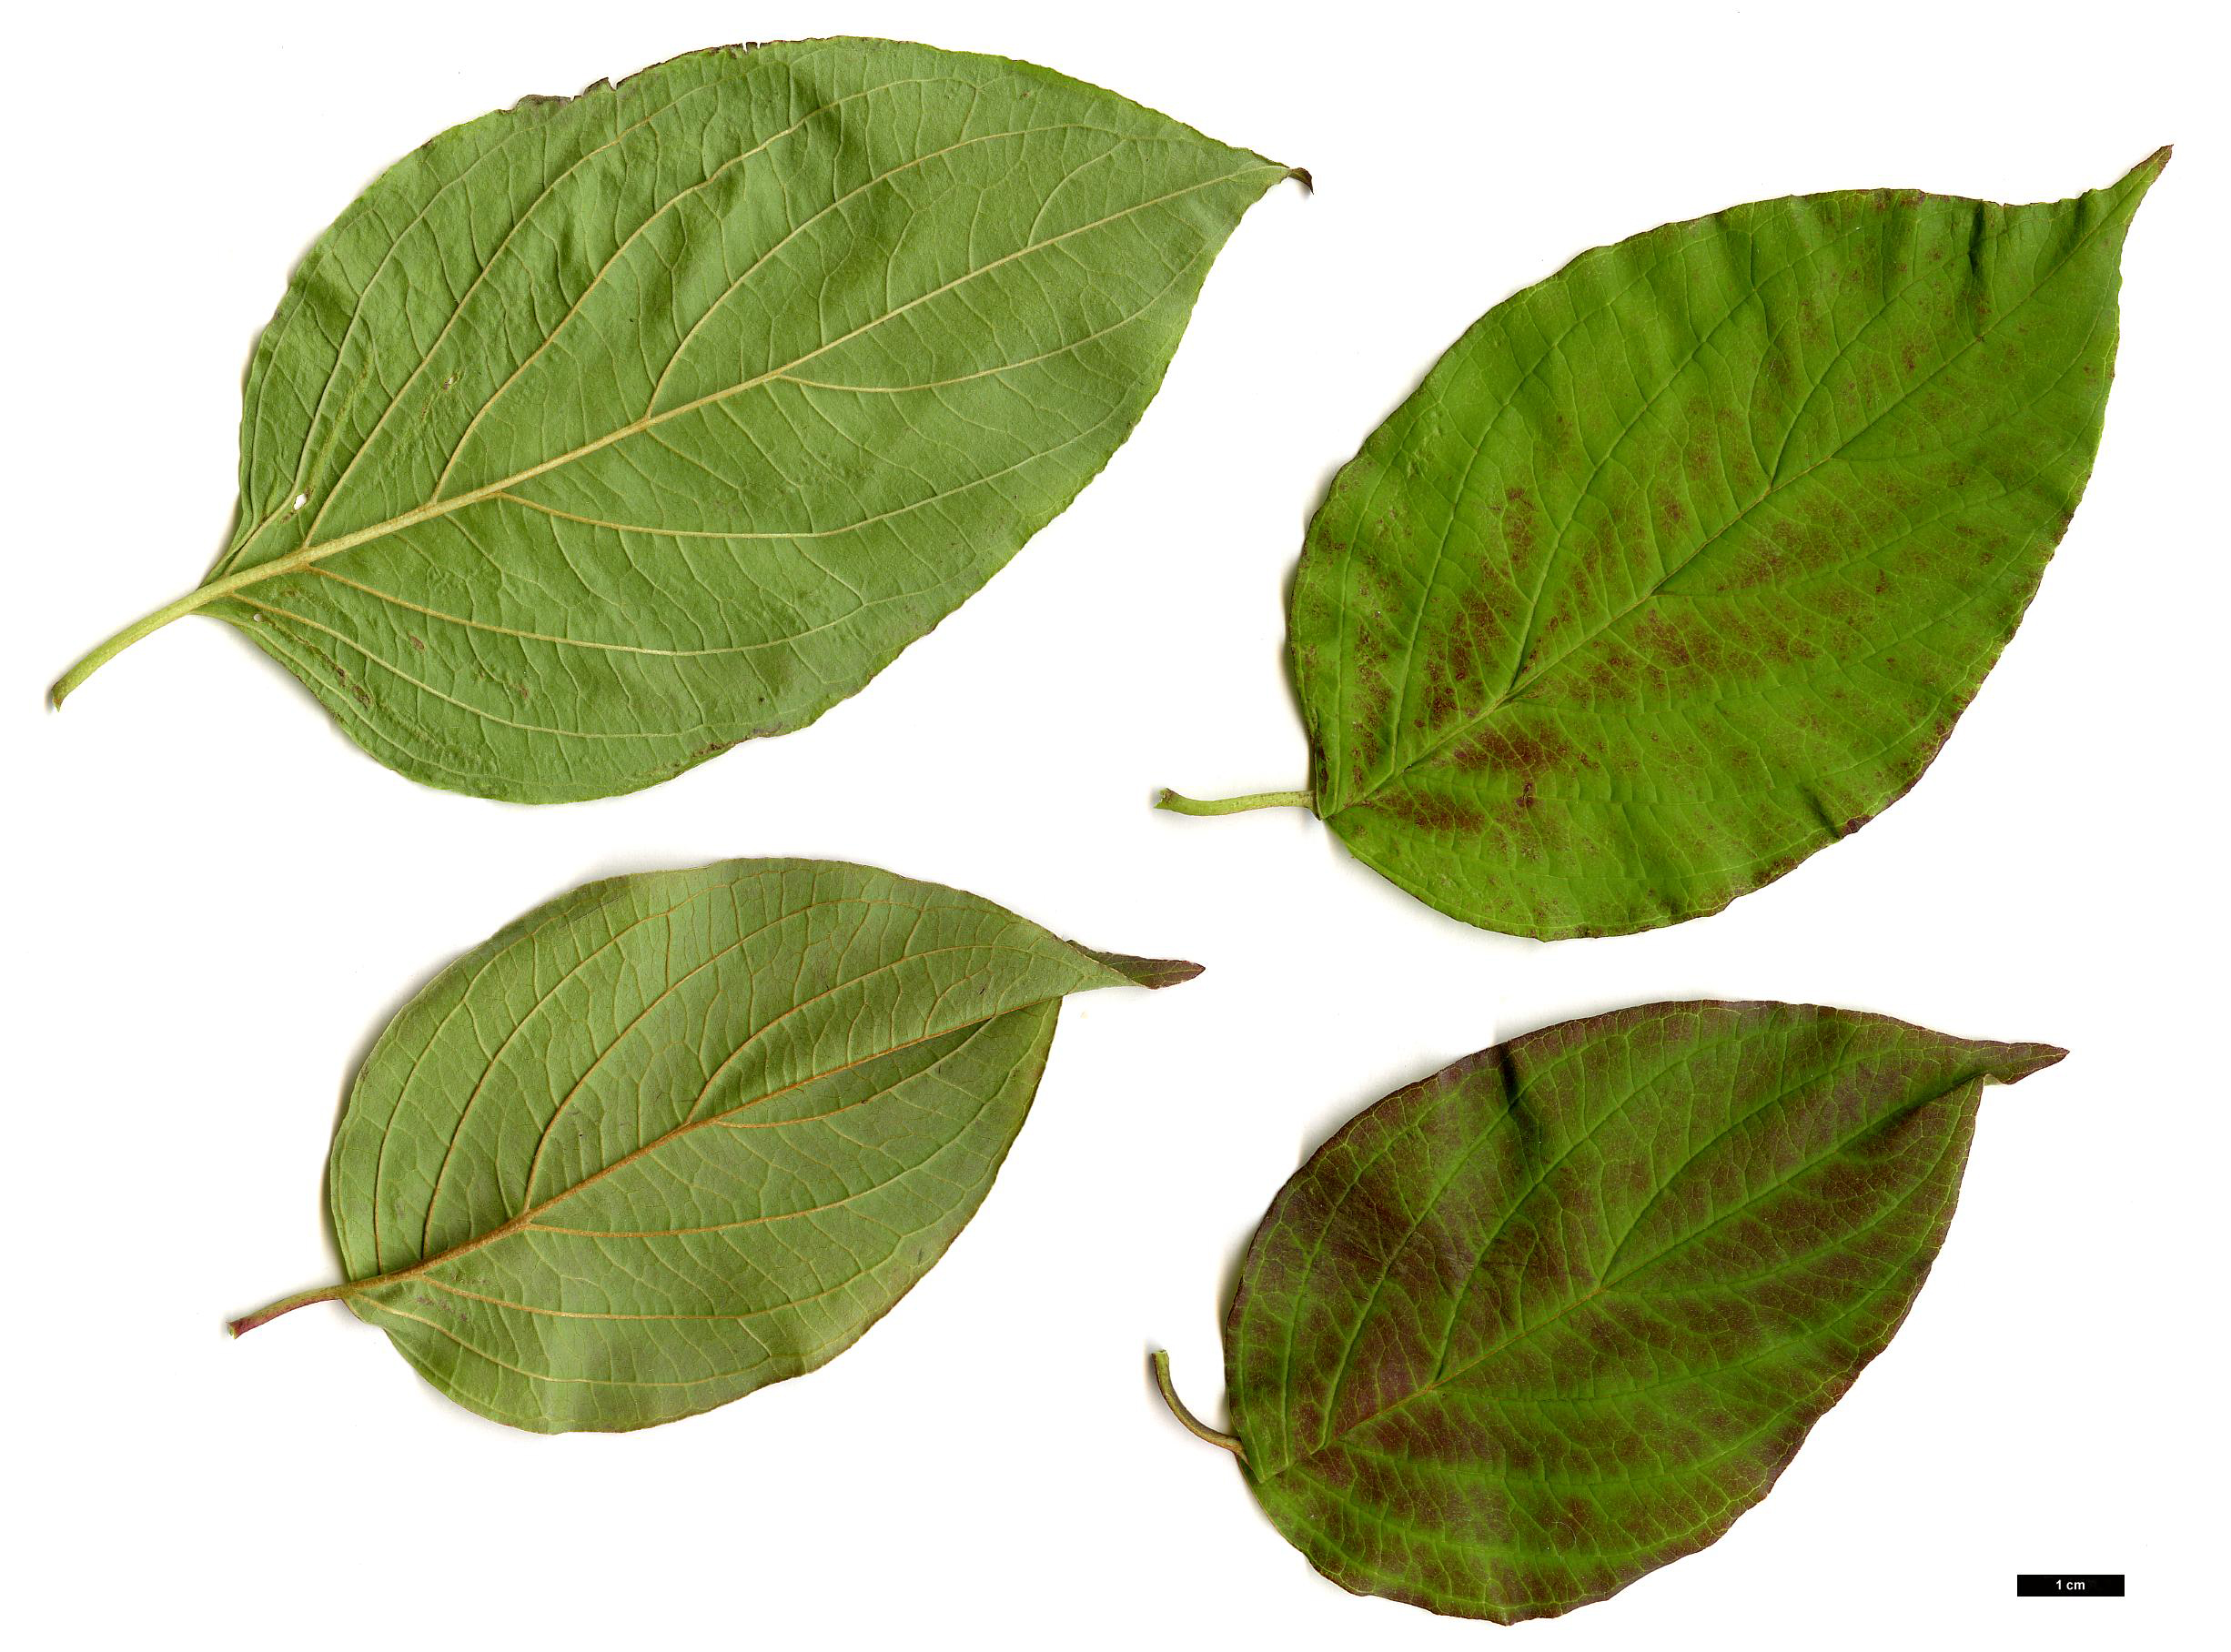 High resolution image: Family: Cornaceae - Genus: Cornus - Taxon: amomum